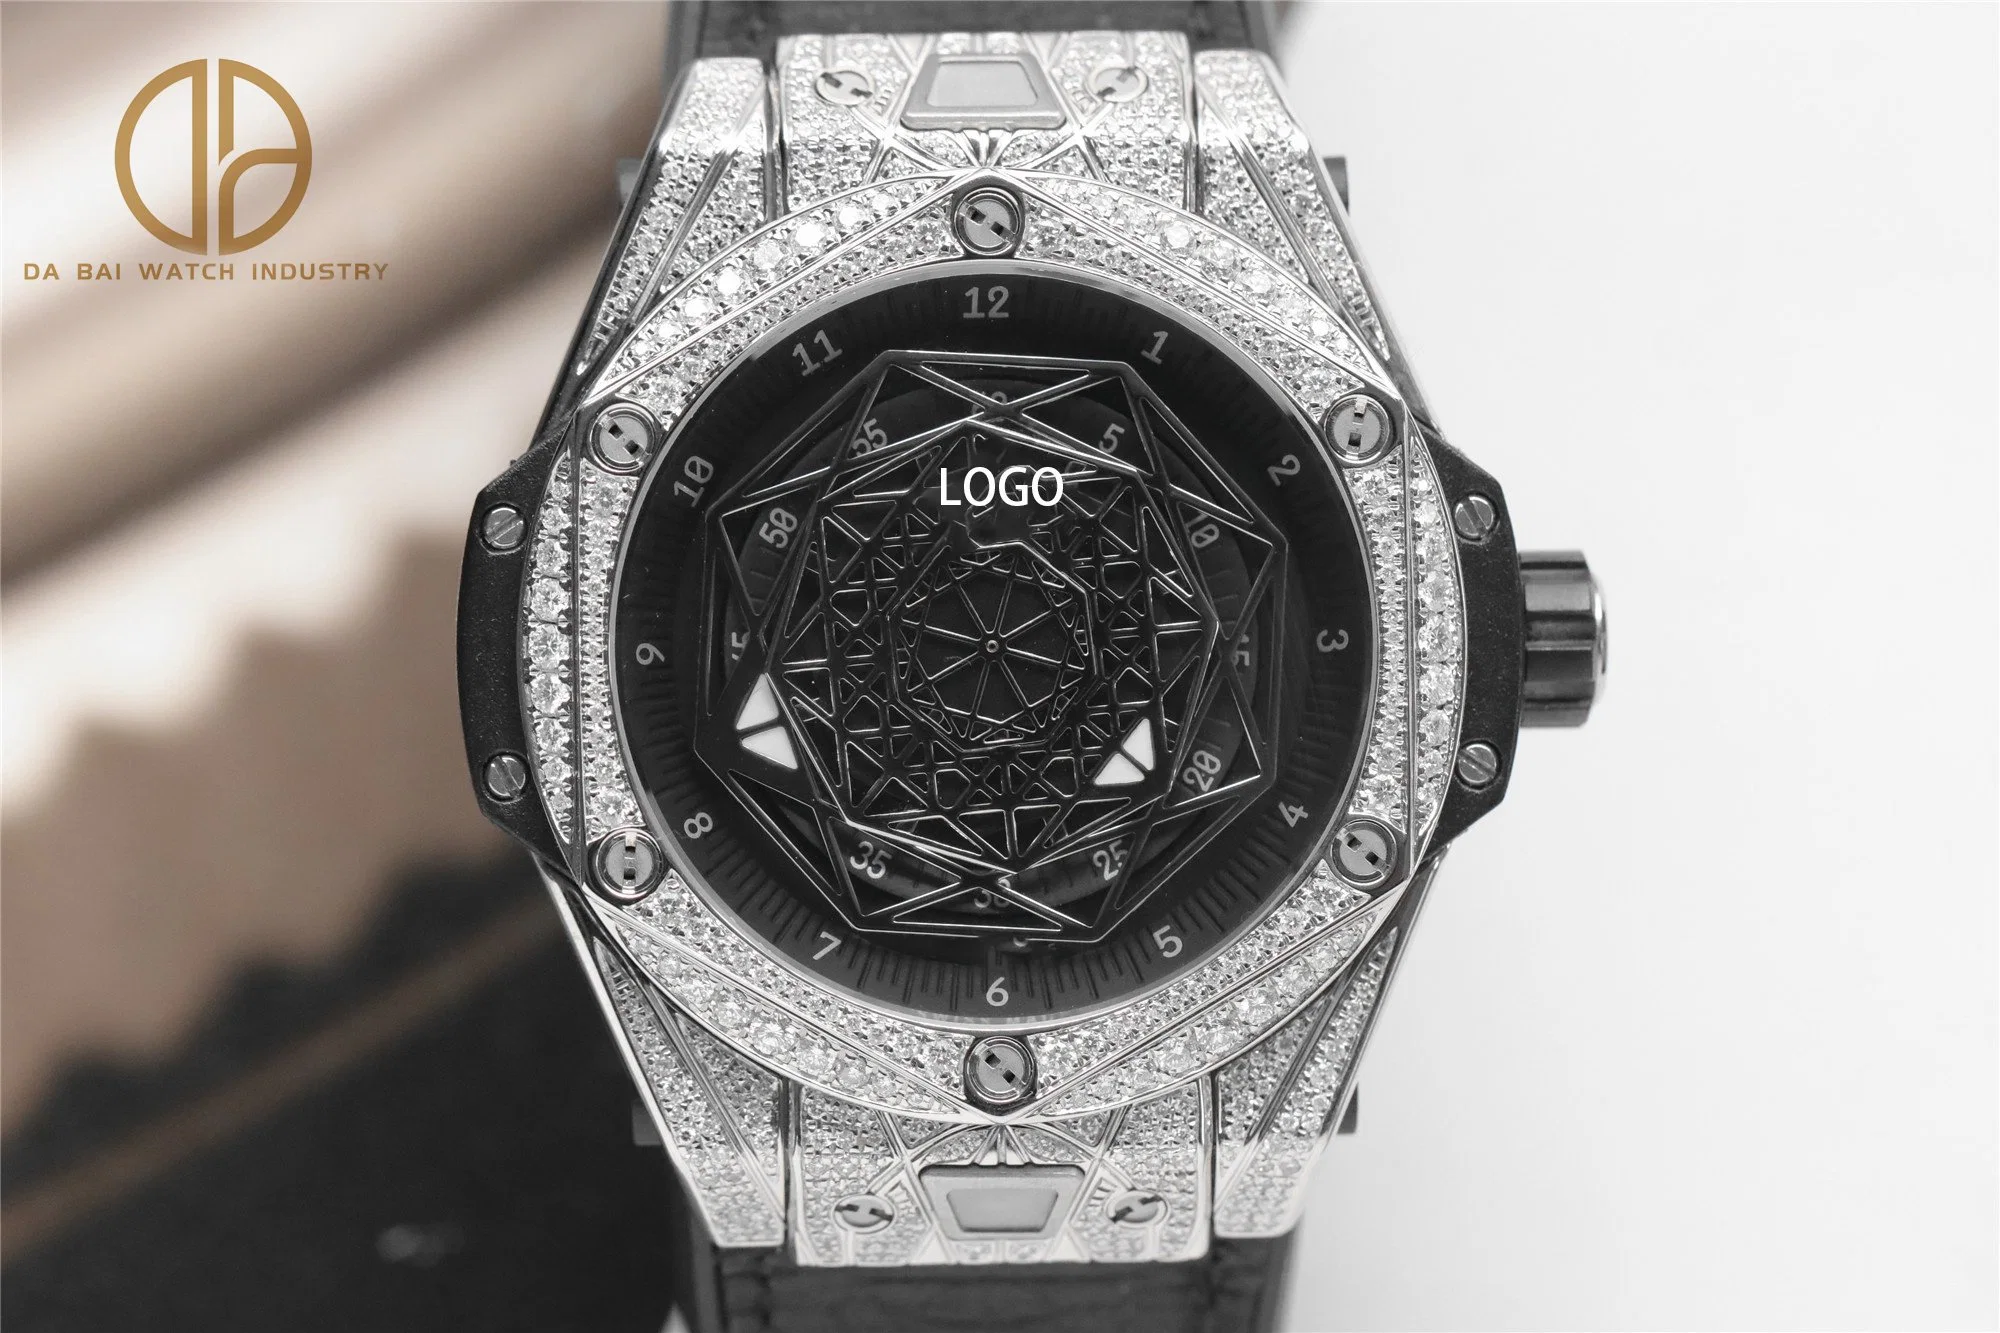 Super Clone Watch 5A WWF HB Factory Diamond Inуложенные часы Sports Mechanical мужские часы, Роскошные титановые быстросъемные часы на ремешке